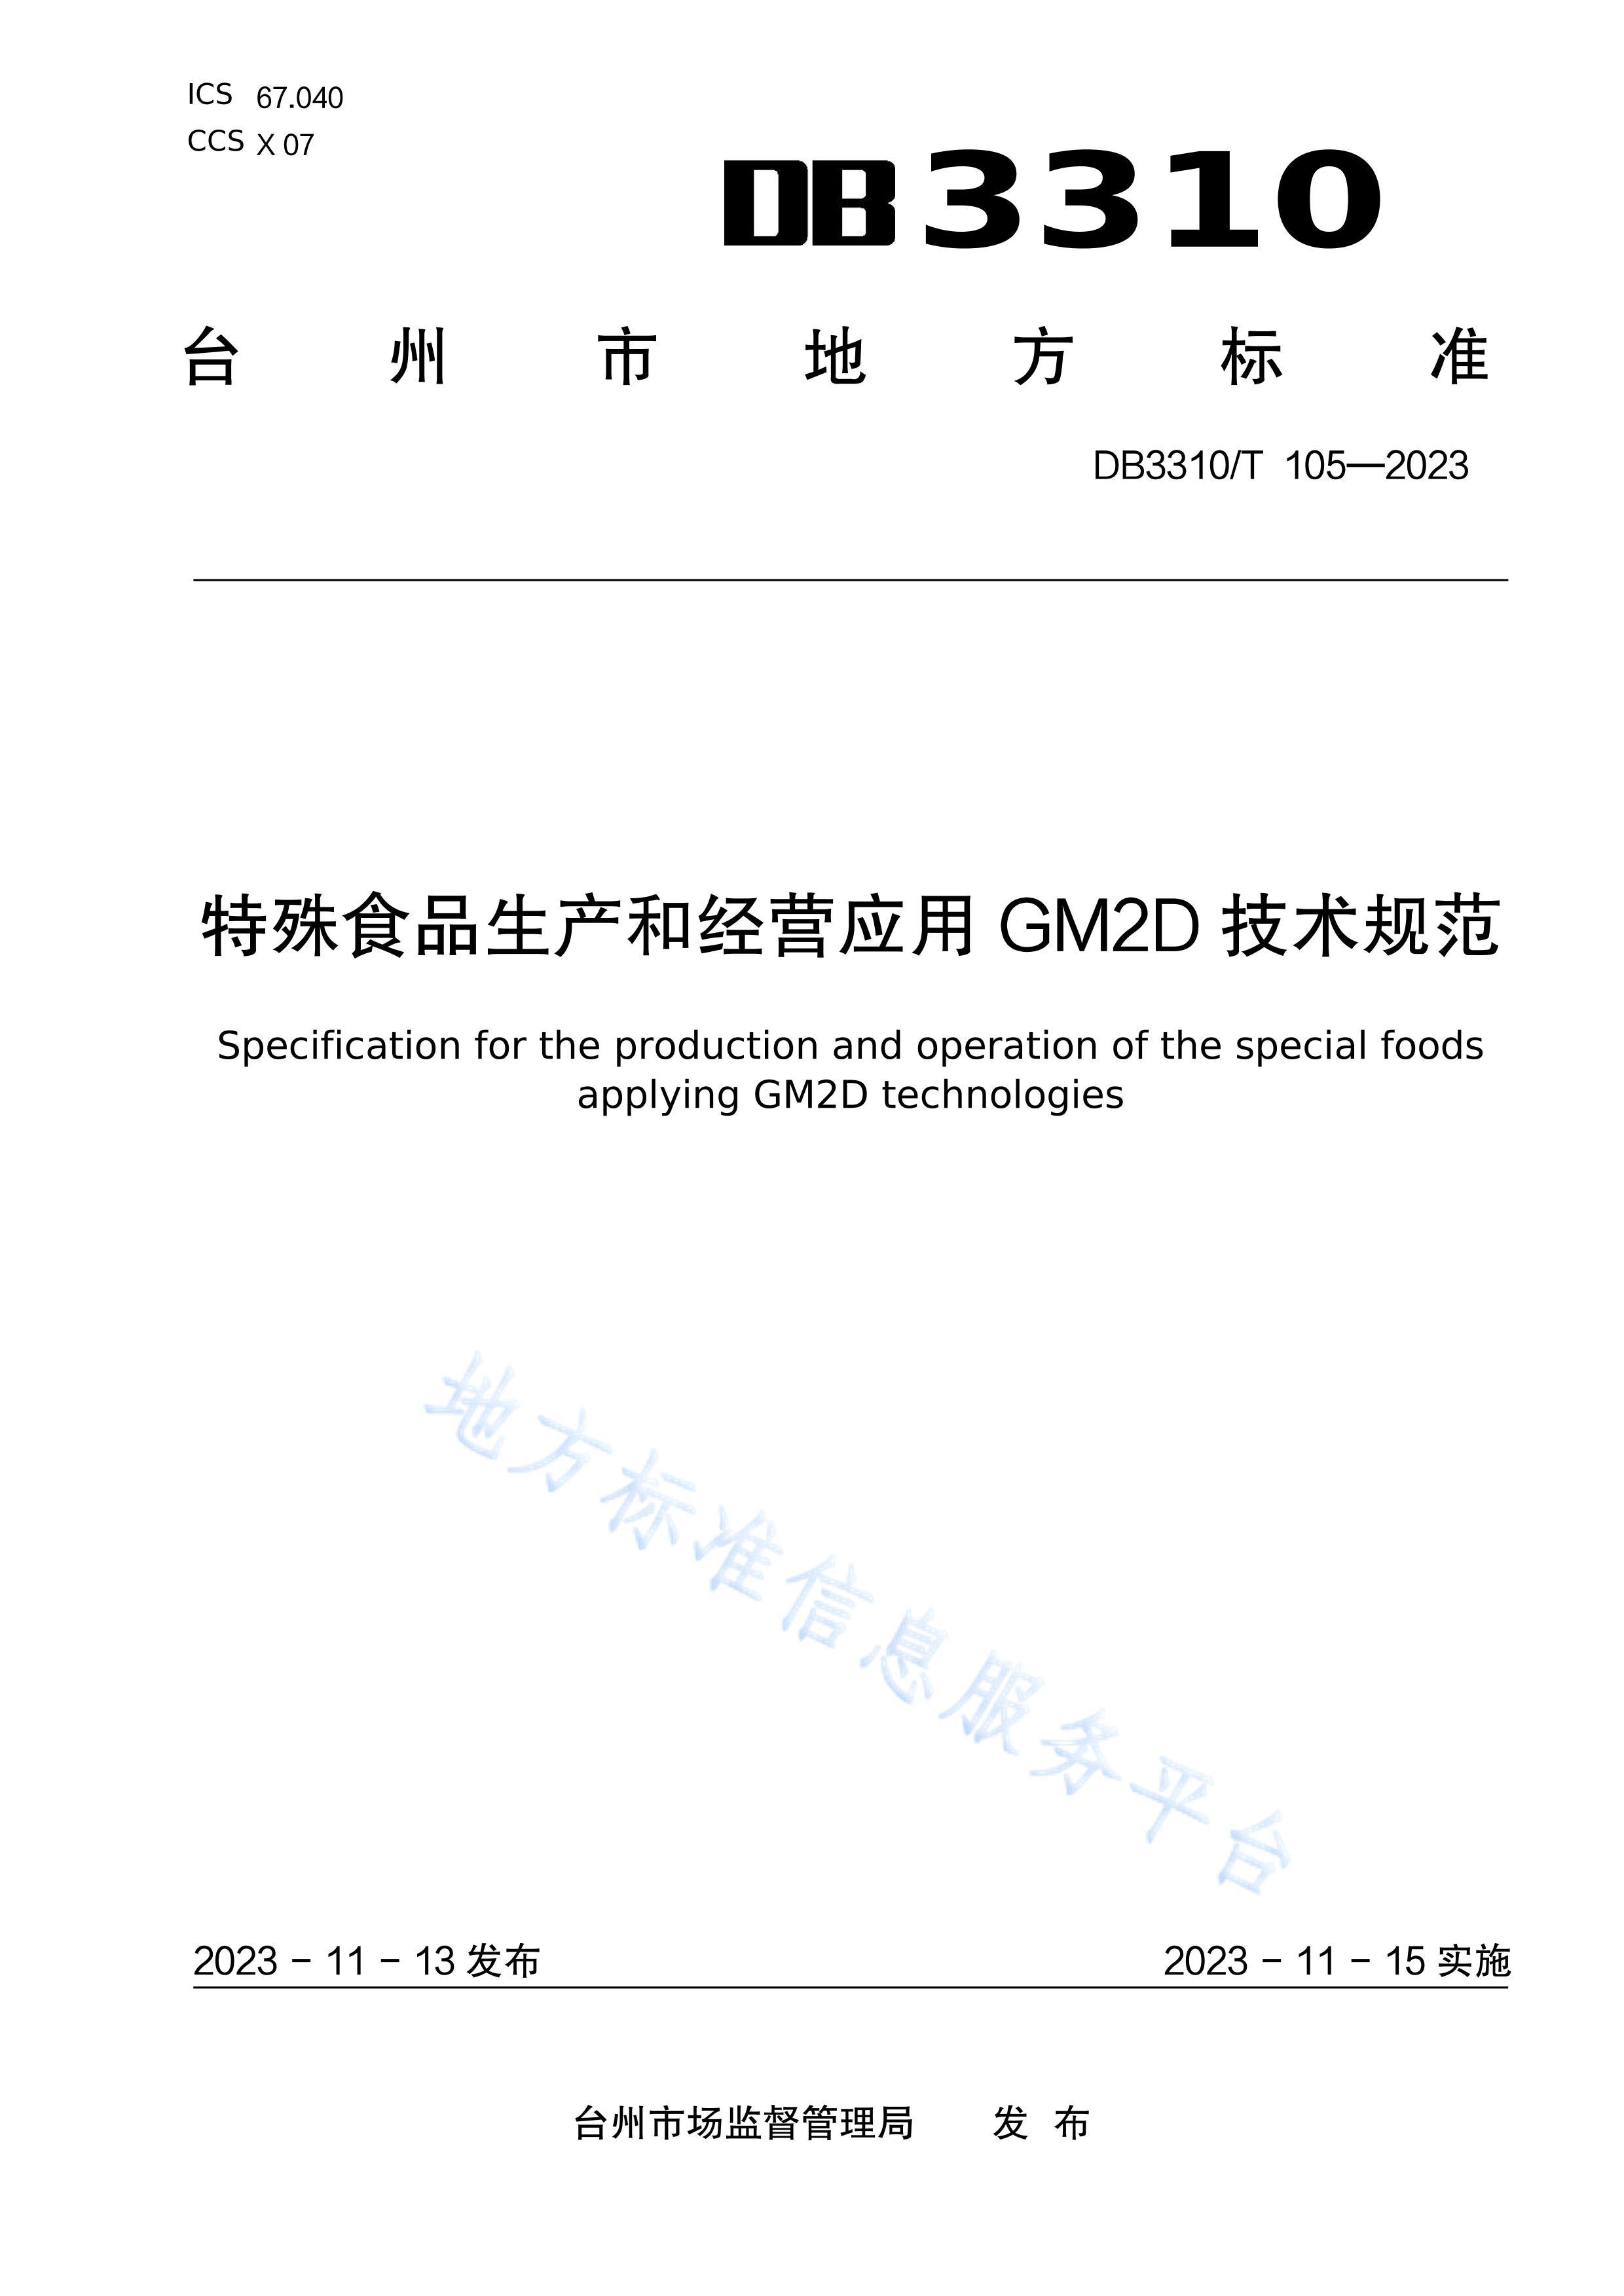 DB3310T105-2023ʳƷ;ӪӦ GM2D 淶.pdf1ҳ